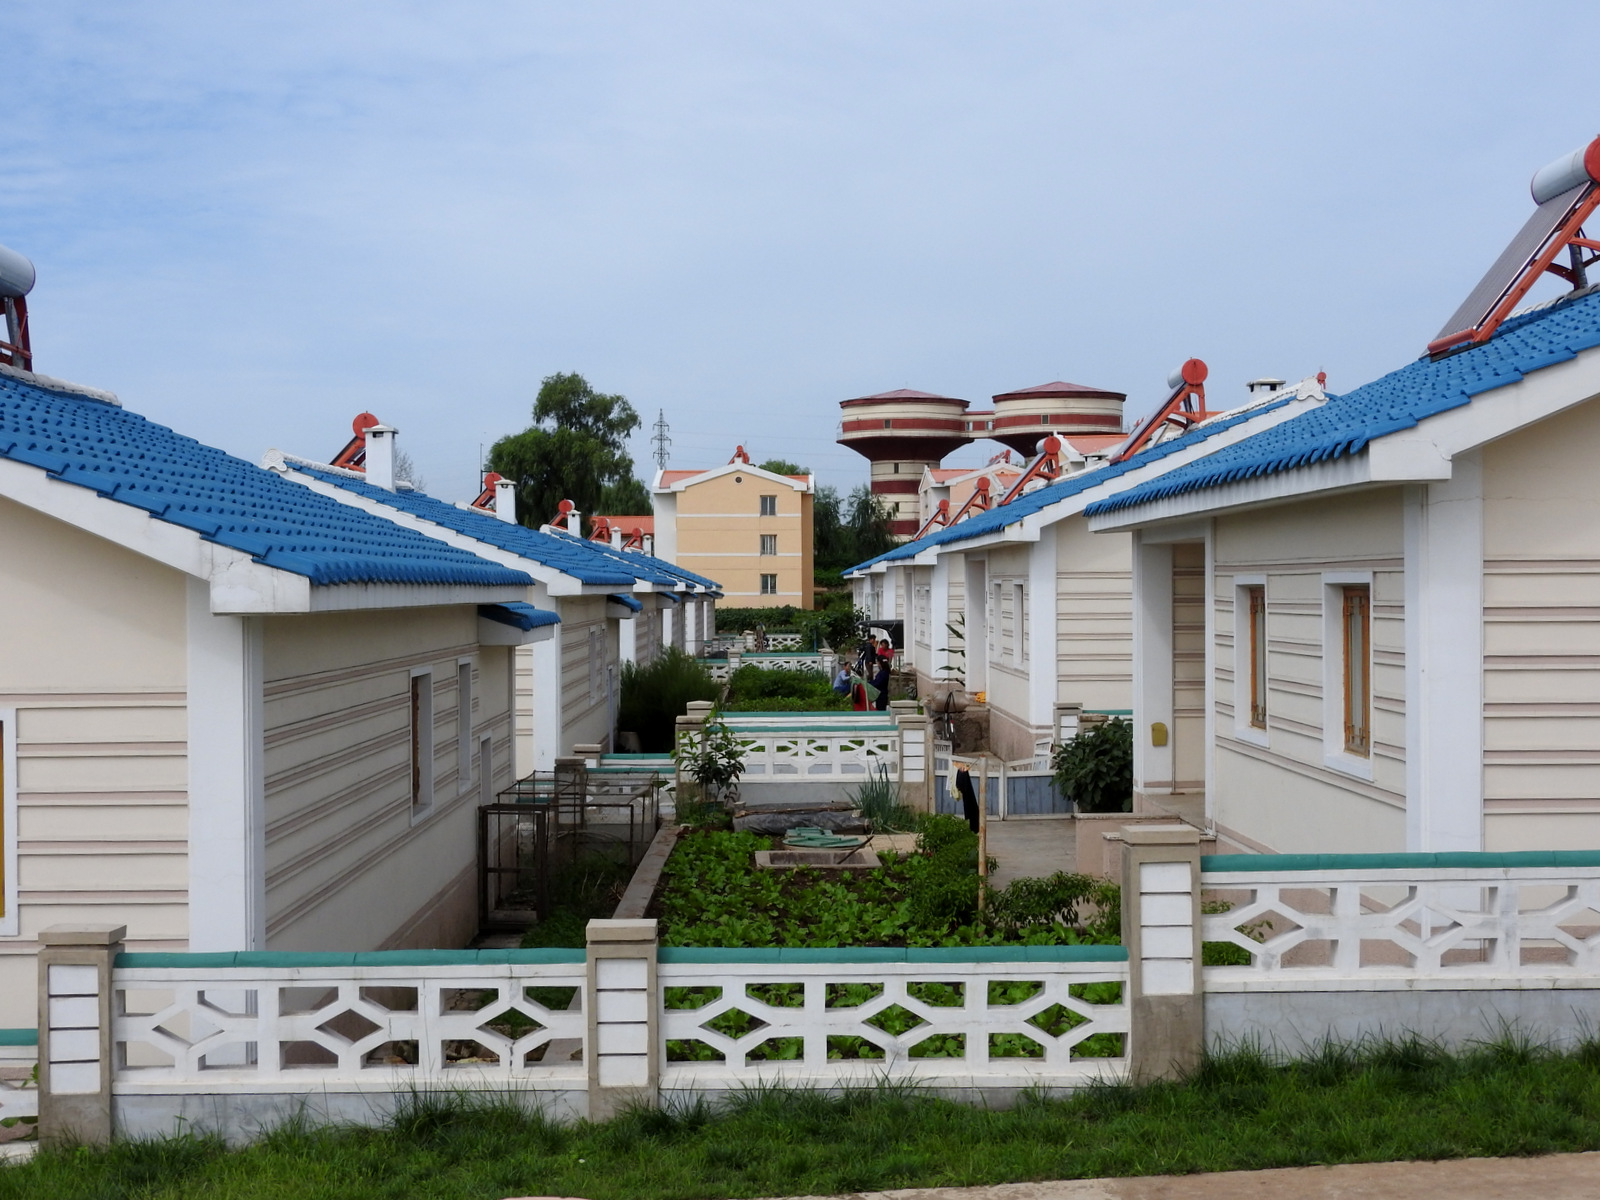 Μικροί κήποι στον αγροτικό συνεταιρισμό Jangchon. Τα σπίτια είναι πλήρως εξοπλισμένα, με ηλιακούς θερμοσίφωνες και φυσικό αέριο για τις συσκευές της κουζίνας.